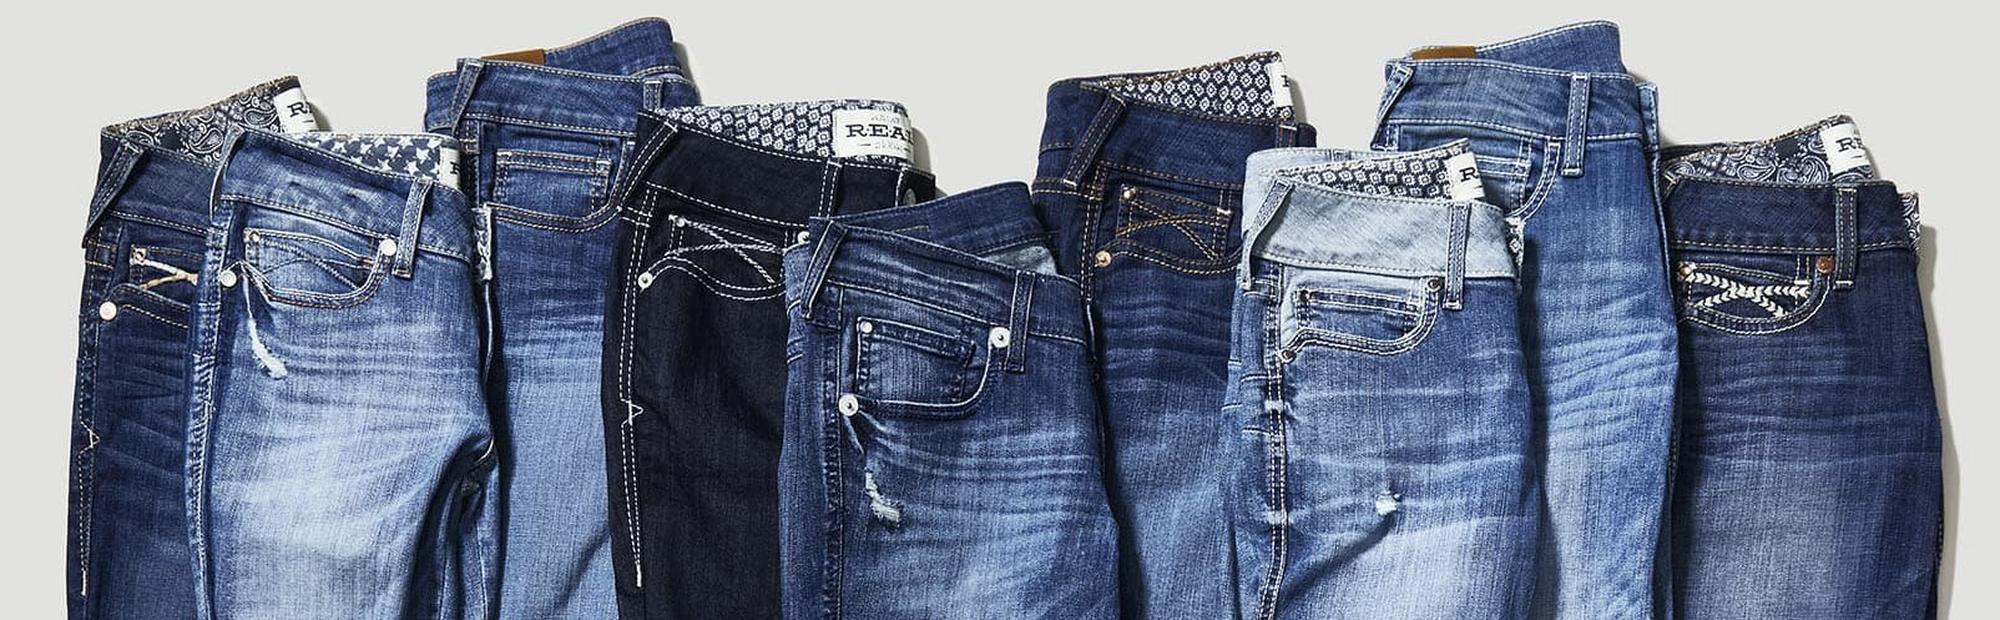 Dierbare werkzaamheid Moreel onderwijs 7 Reasons Why Ariat Jeans Are The Best | Ariat